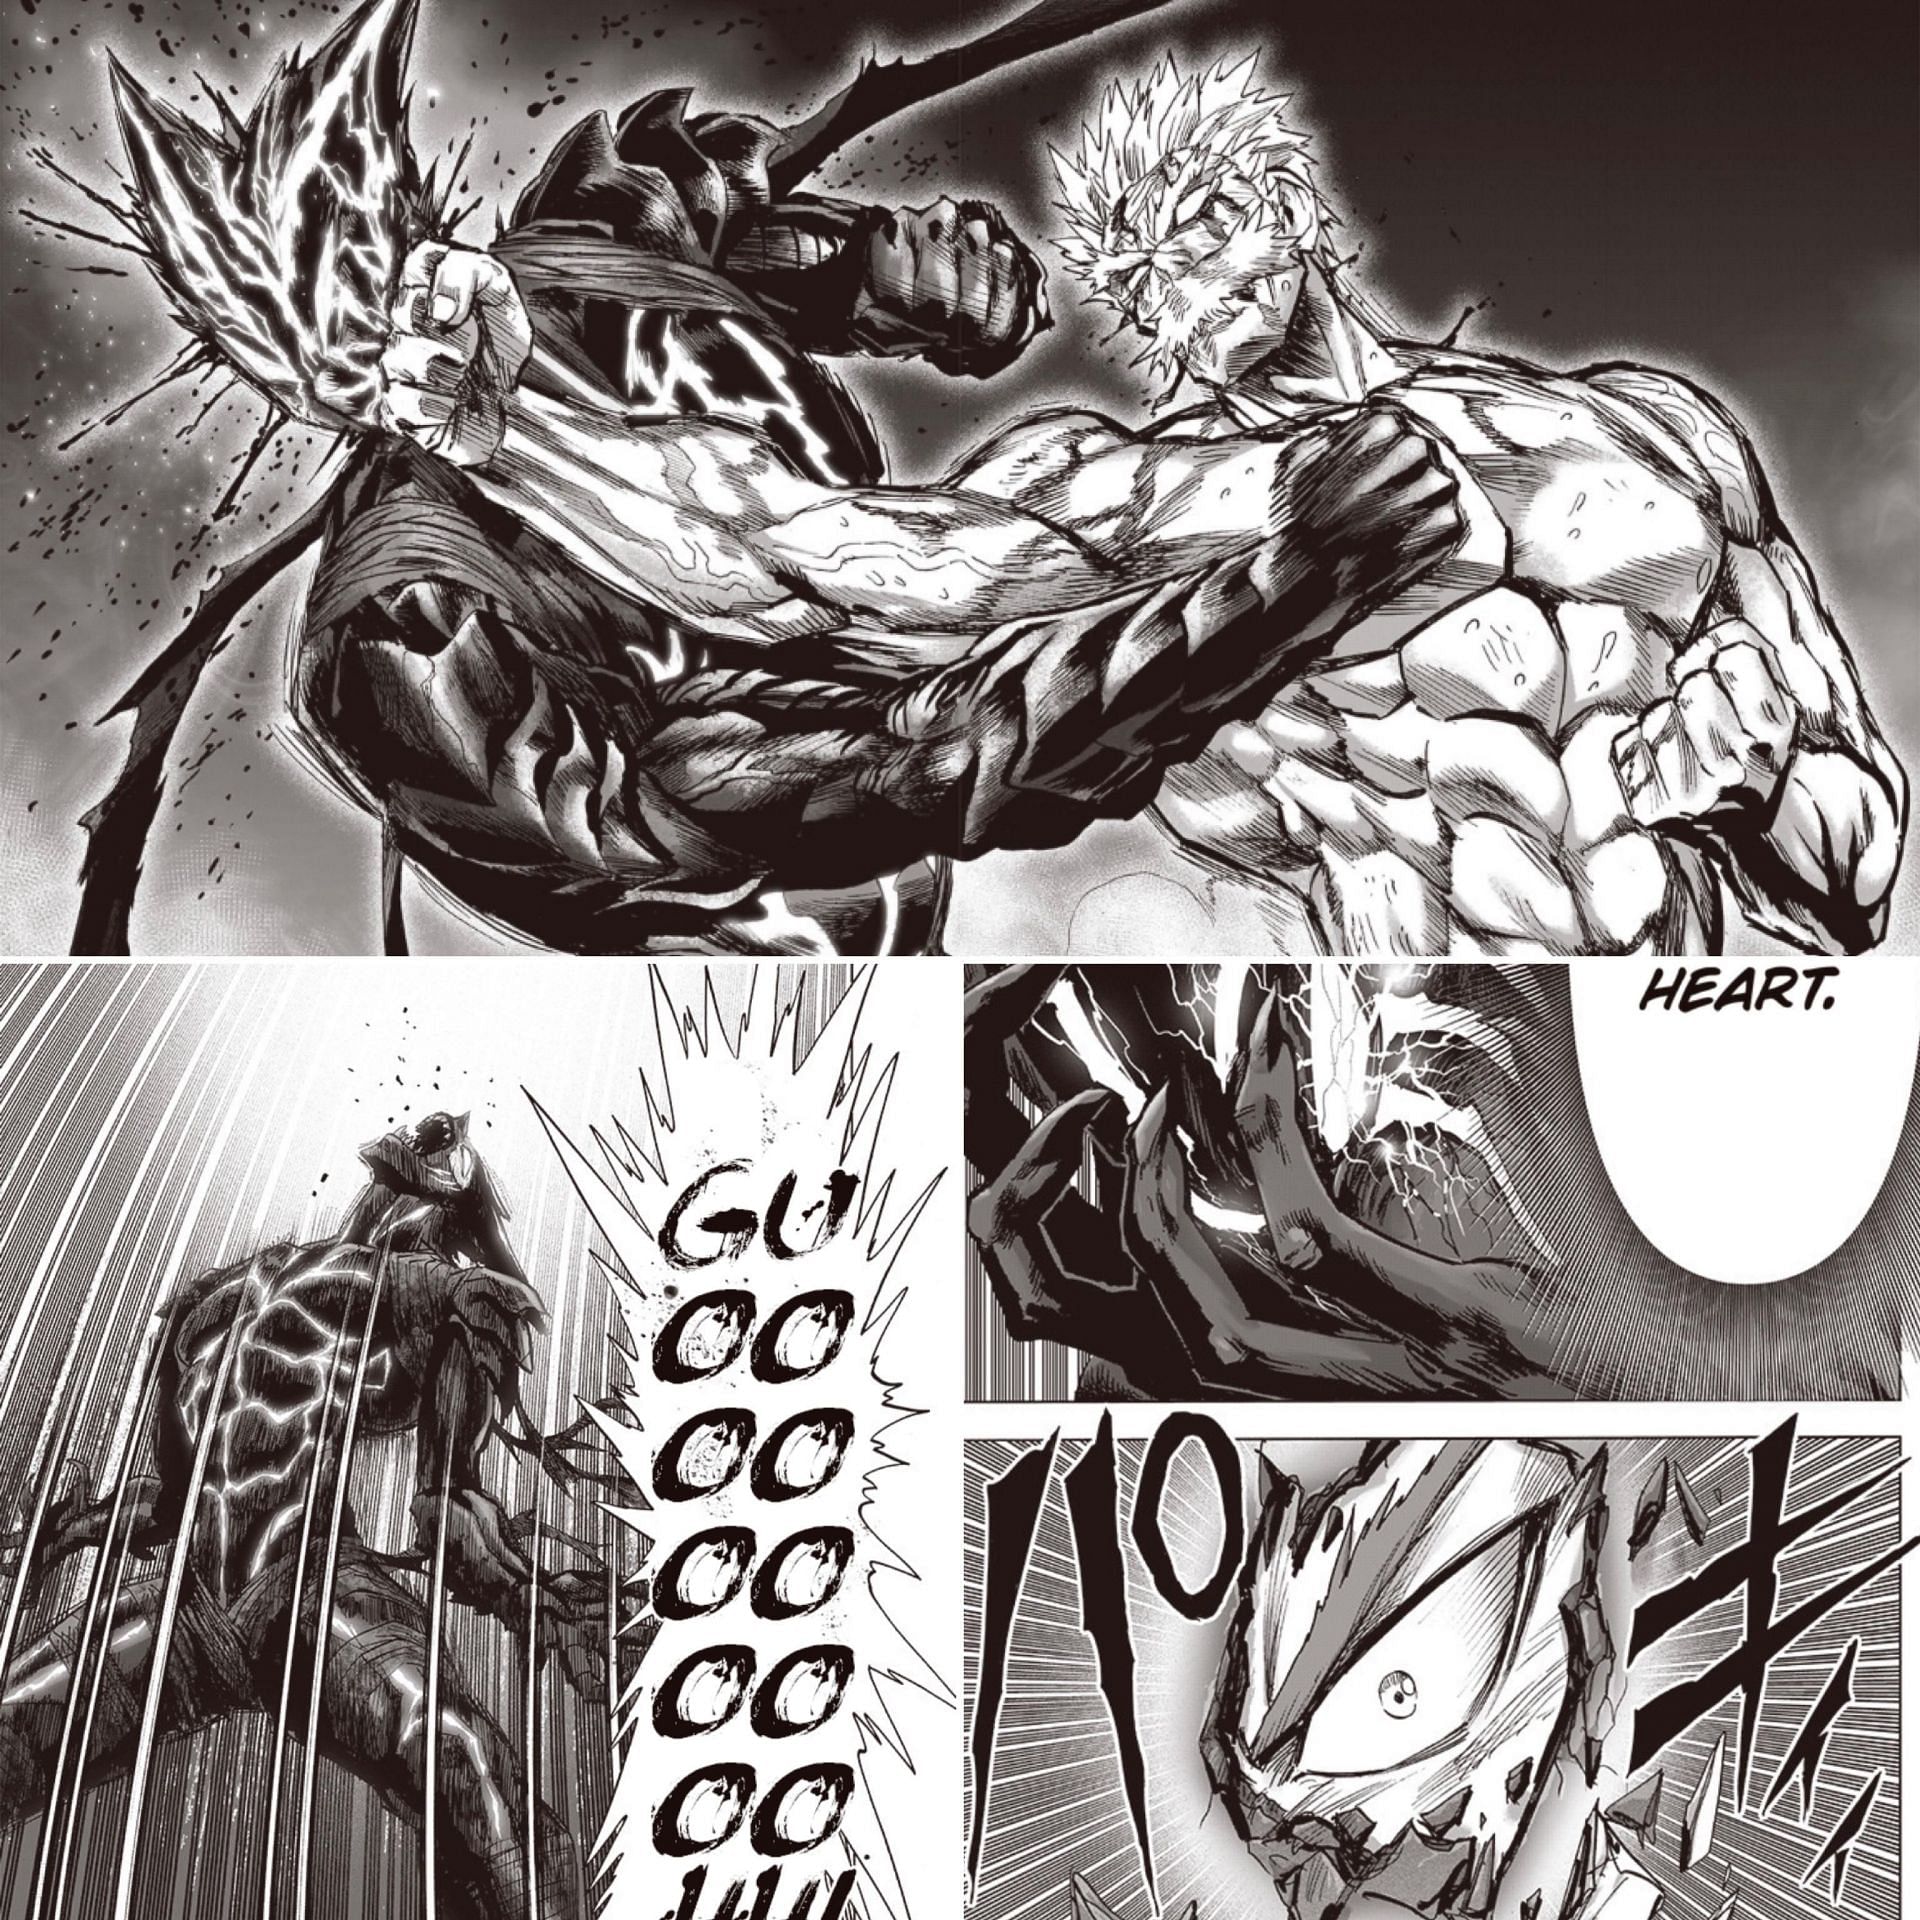 Garou vs Silver Fang in One Punch Man (image via Murata)